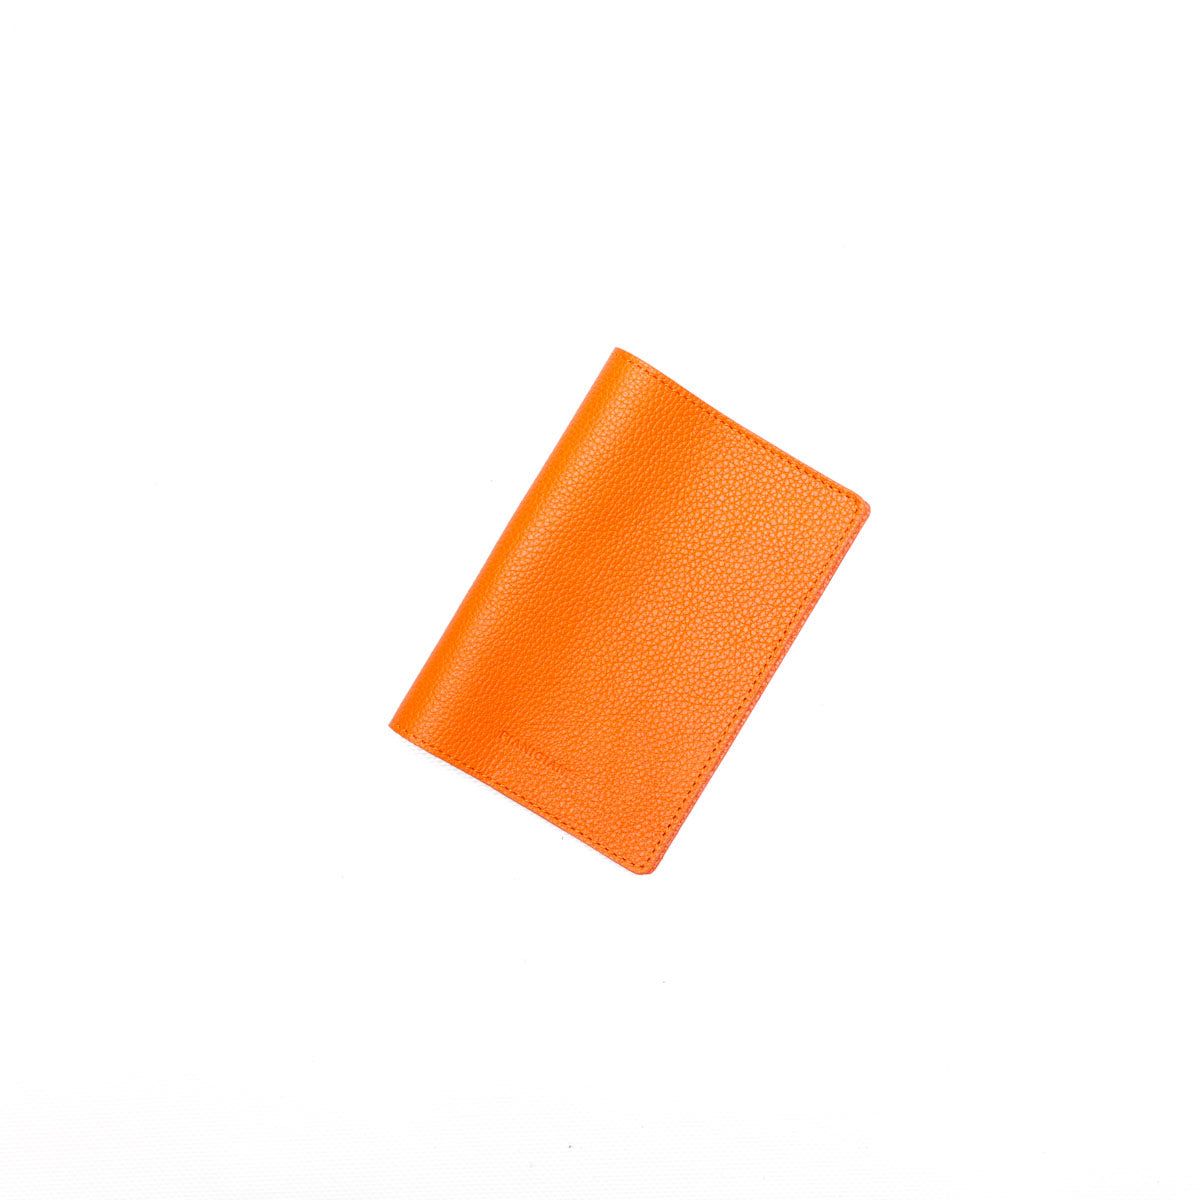 Porta passaporto in pelle martellata arancio,prodotto da Pianigiani Bags.